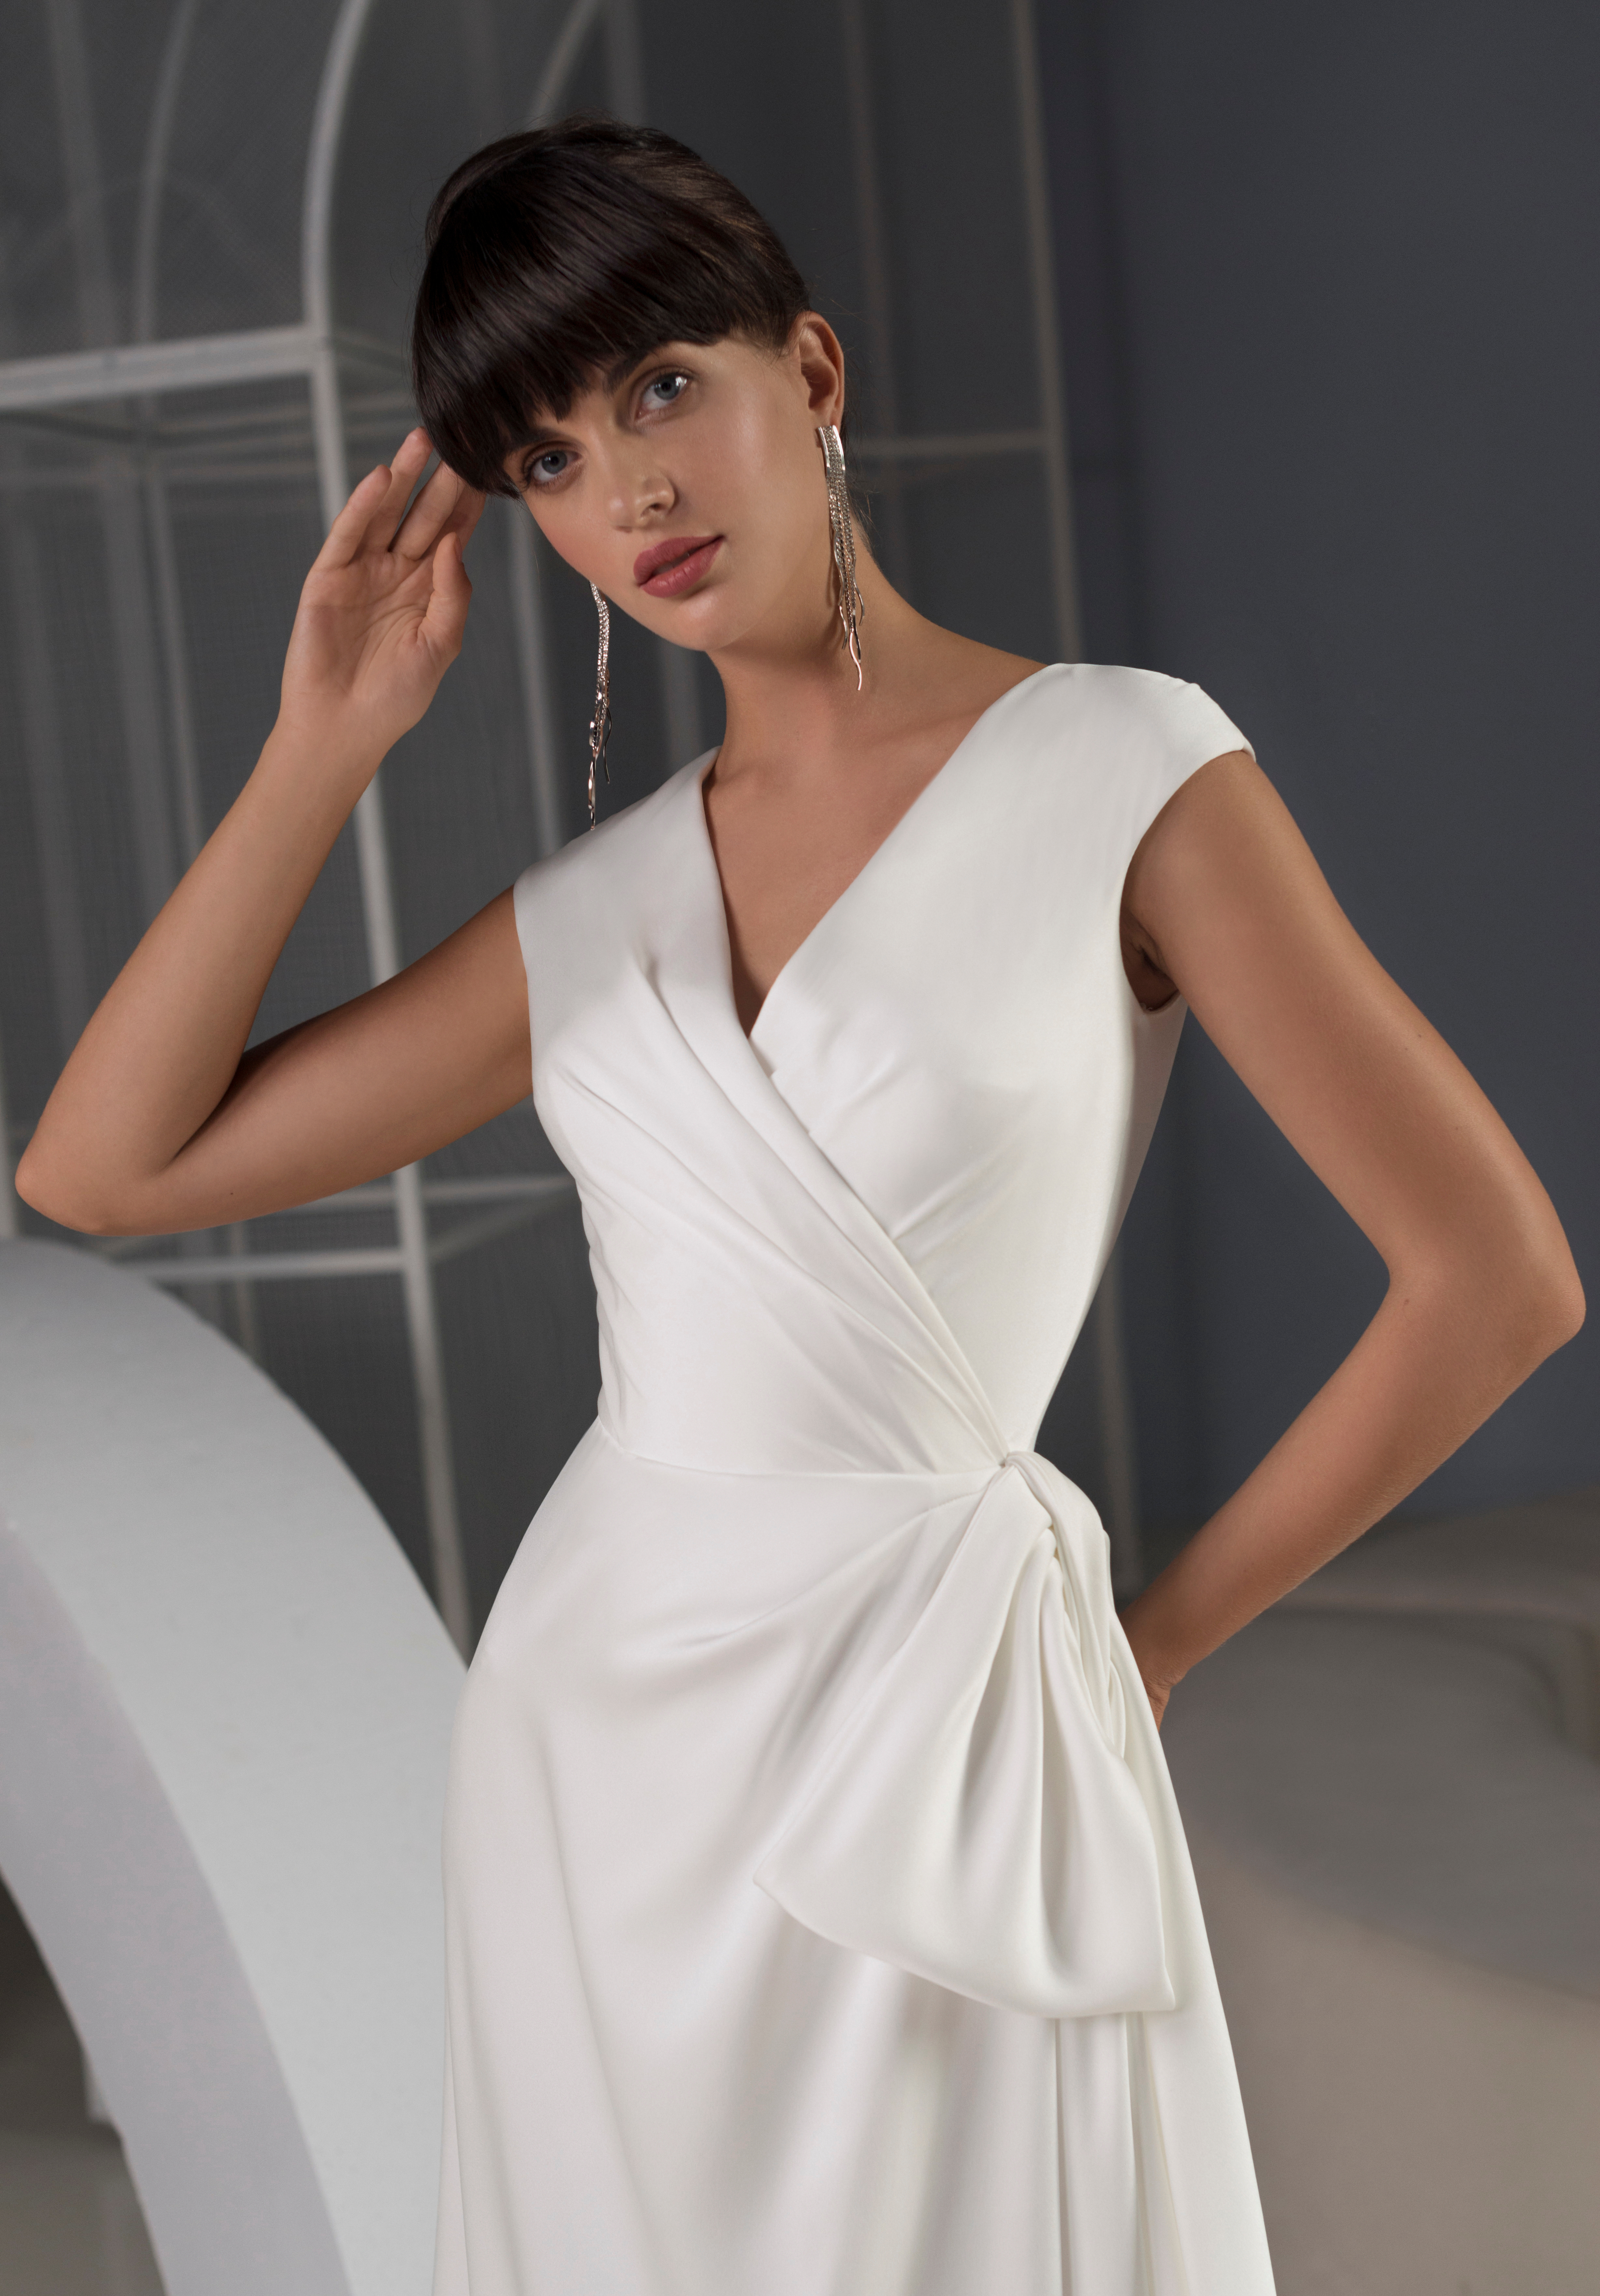 Купить свадебное платье «Филис» Мэрри Марк из коллекции 2022 года в Москве